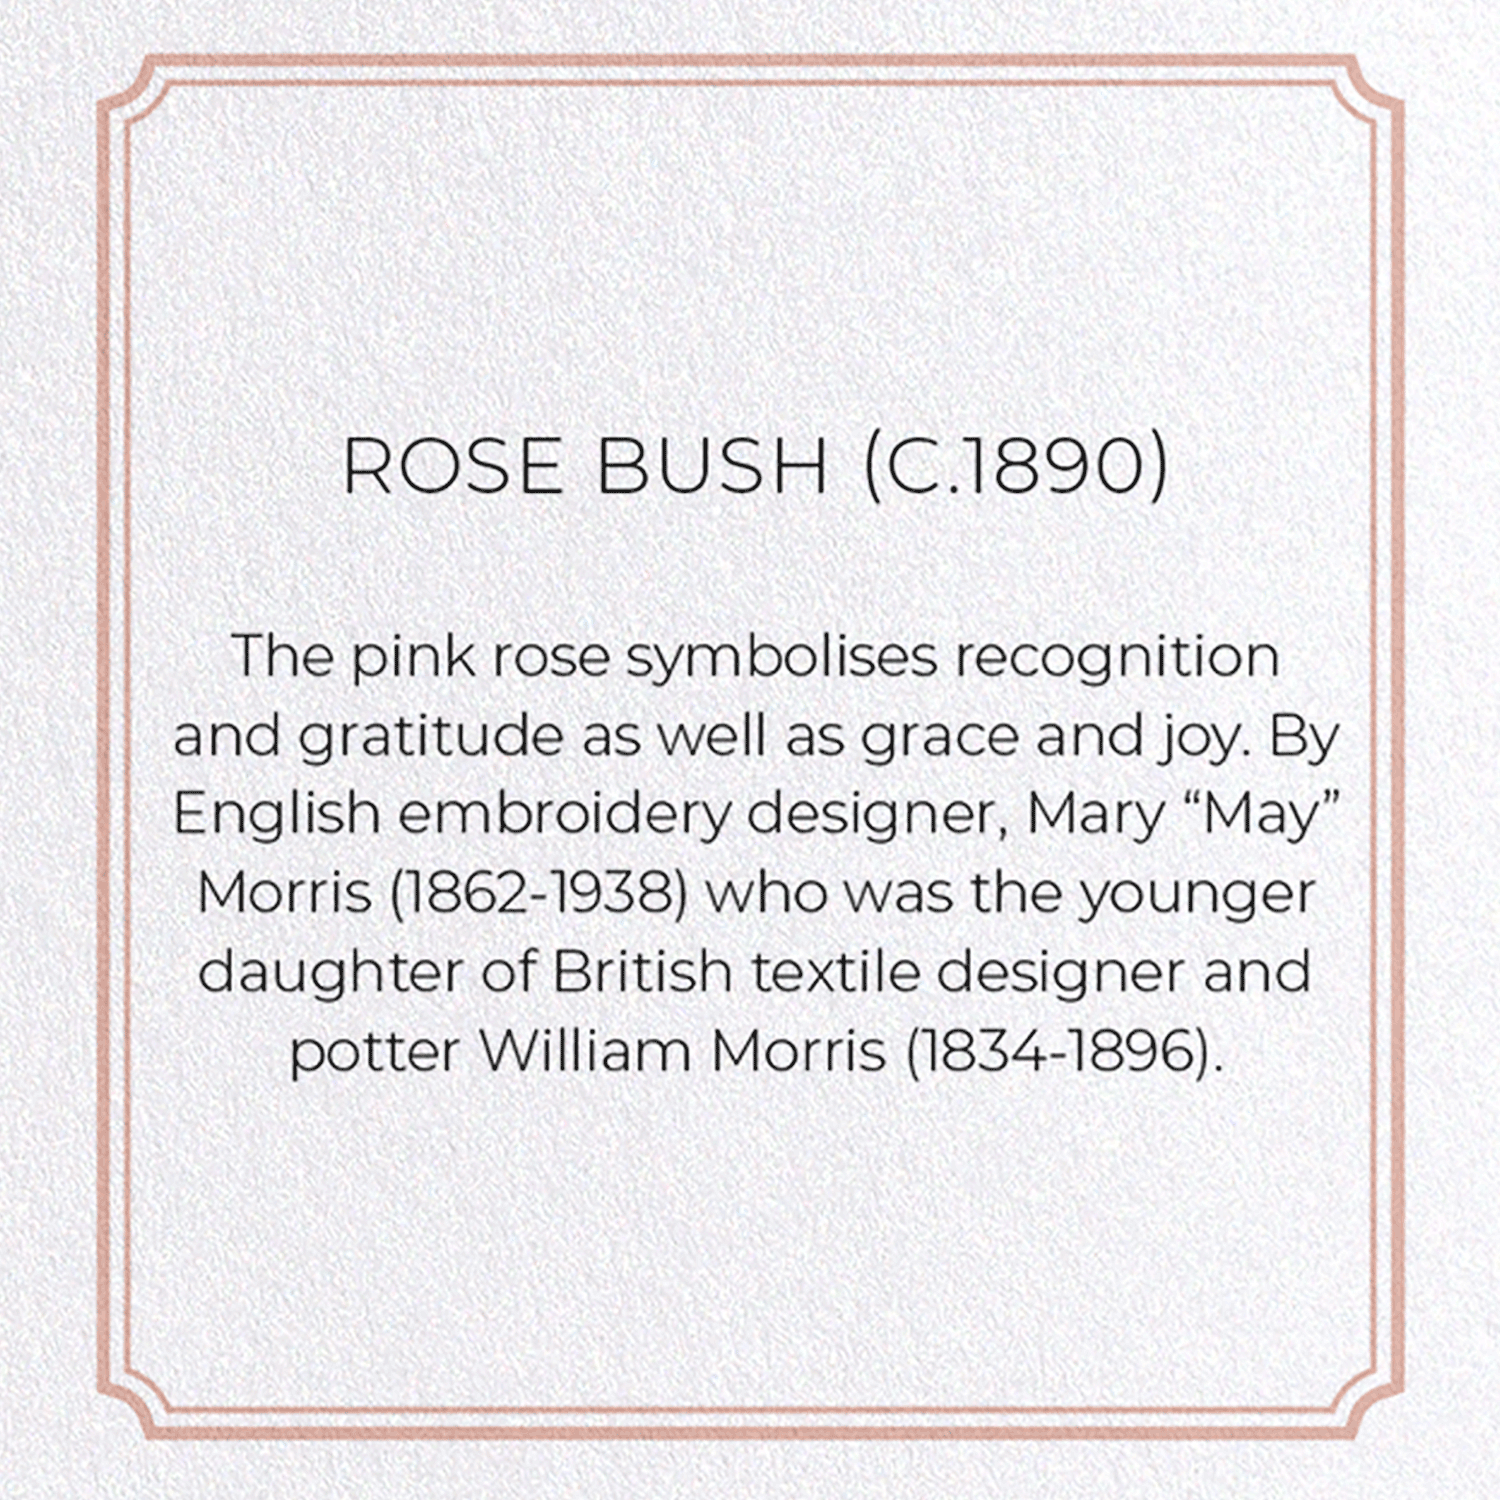 ROSE BUSH (C.1890)